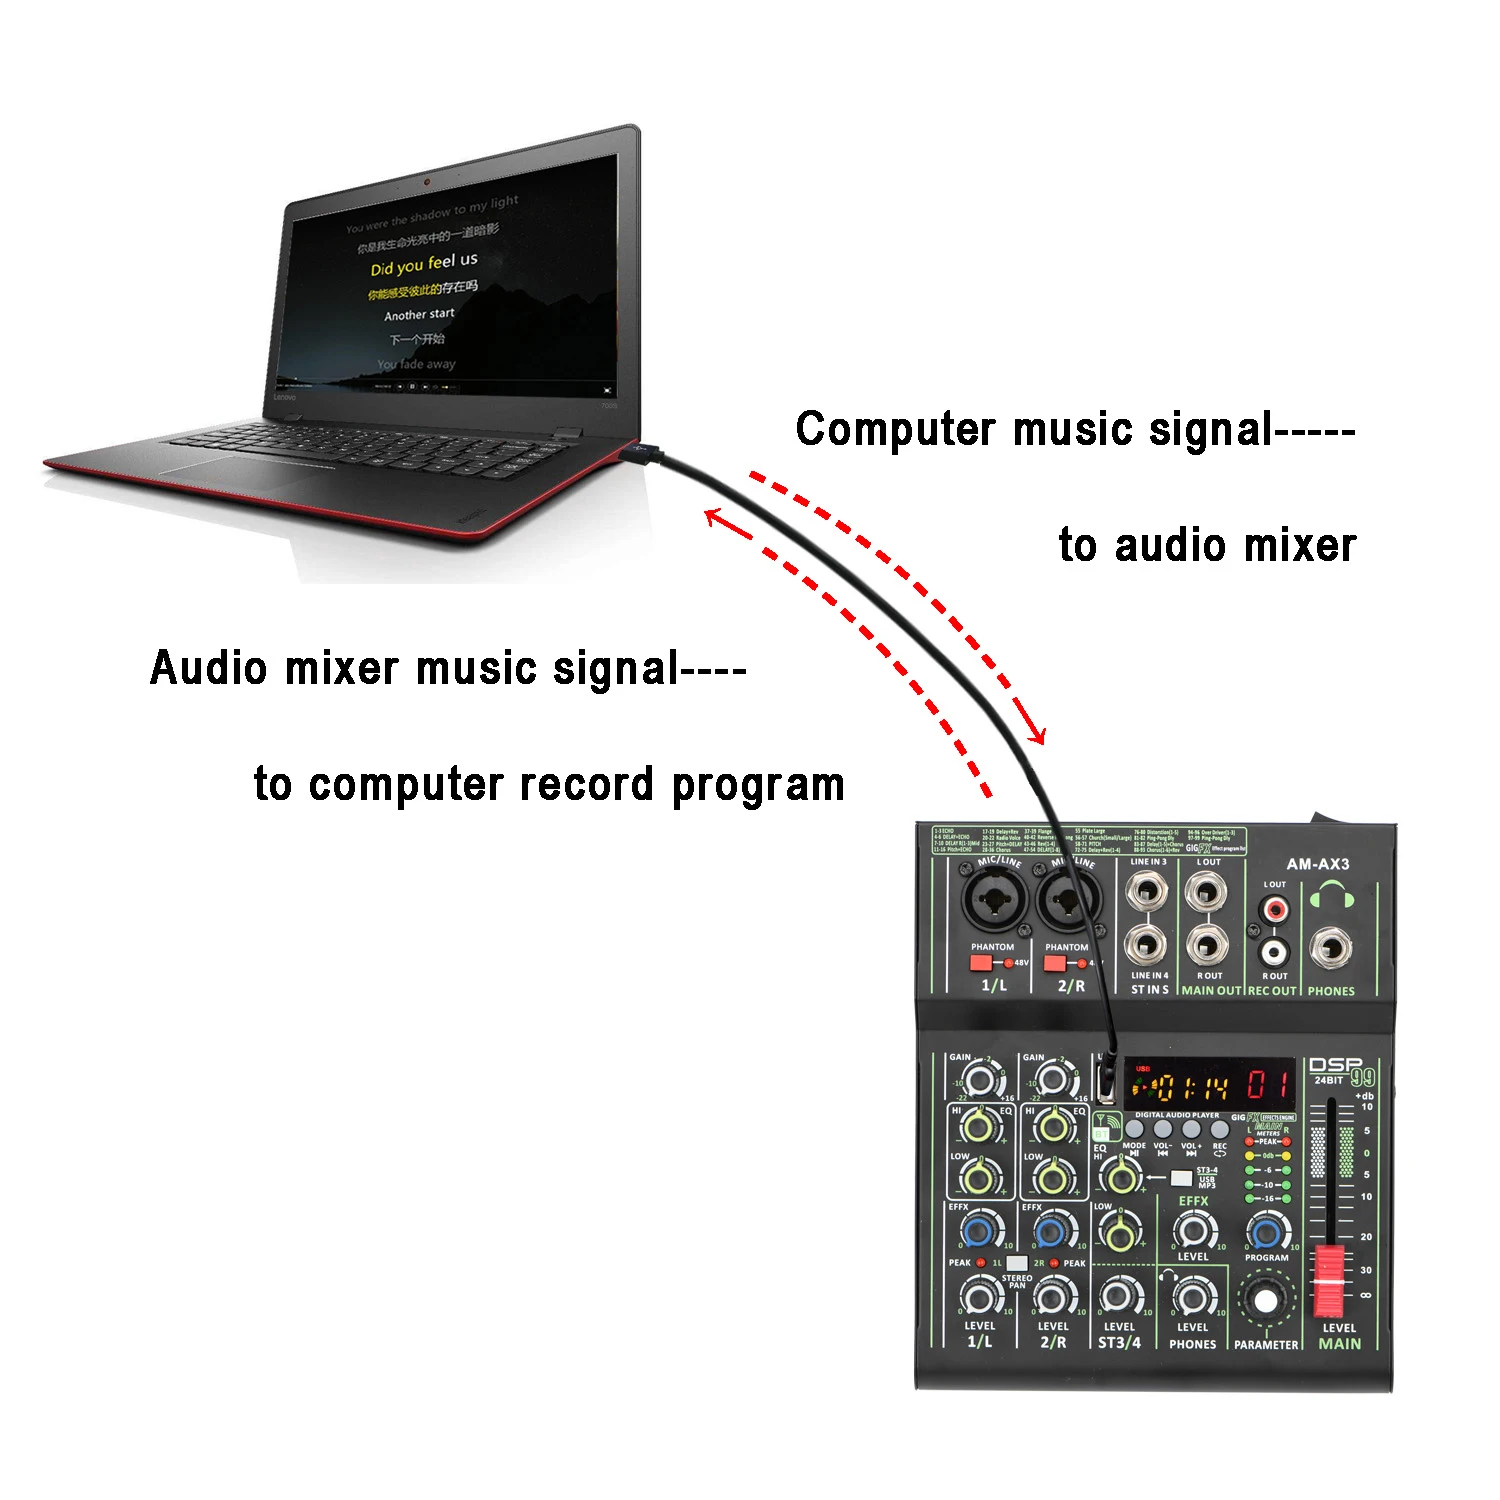 AM-ax3 Профессиональное микширование звука 99DSP, 4-канальный мини-микшер изображений, мобильный компьютер, Независимая запись в реальном времени, фантомный микшер 48 В